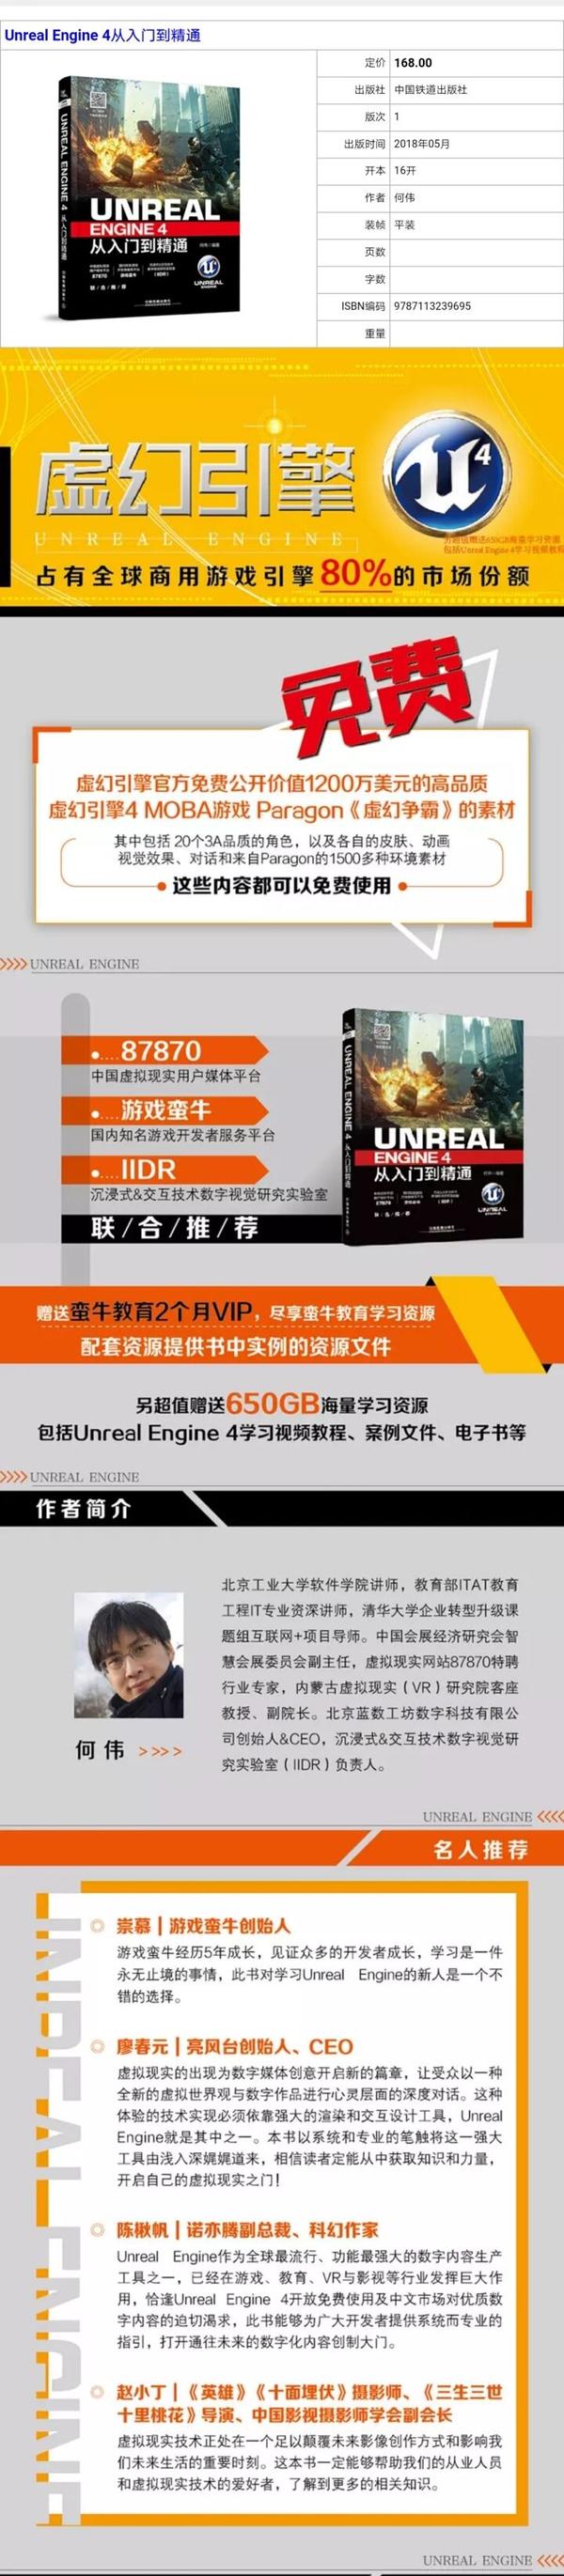 如何评价国内首本ue4书籍 Unreal Engine 4从入门到精通 知乎